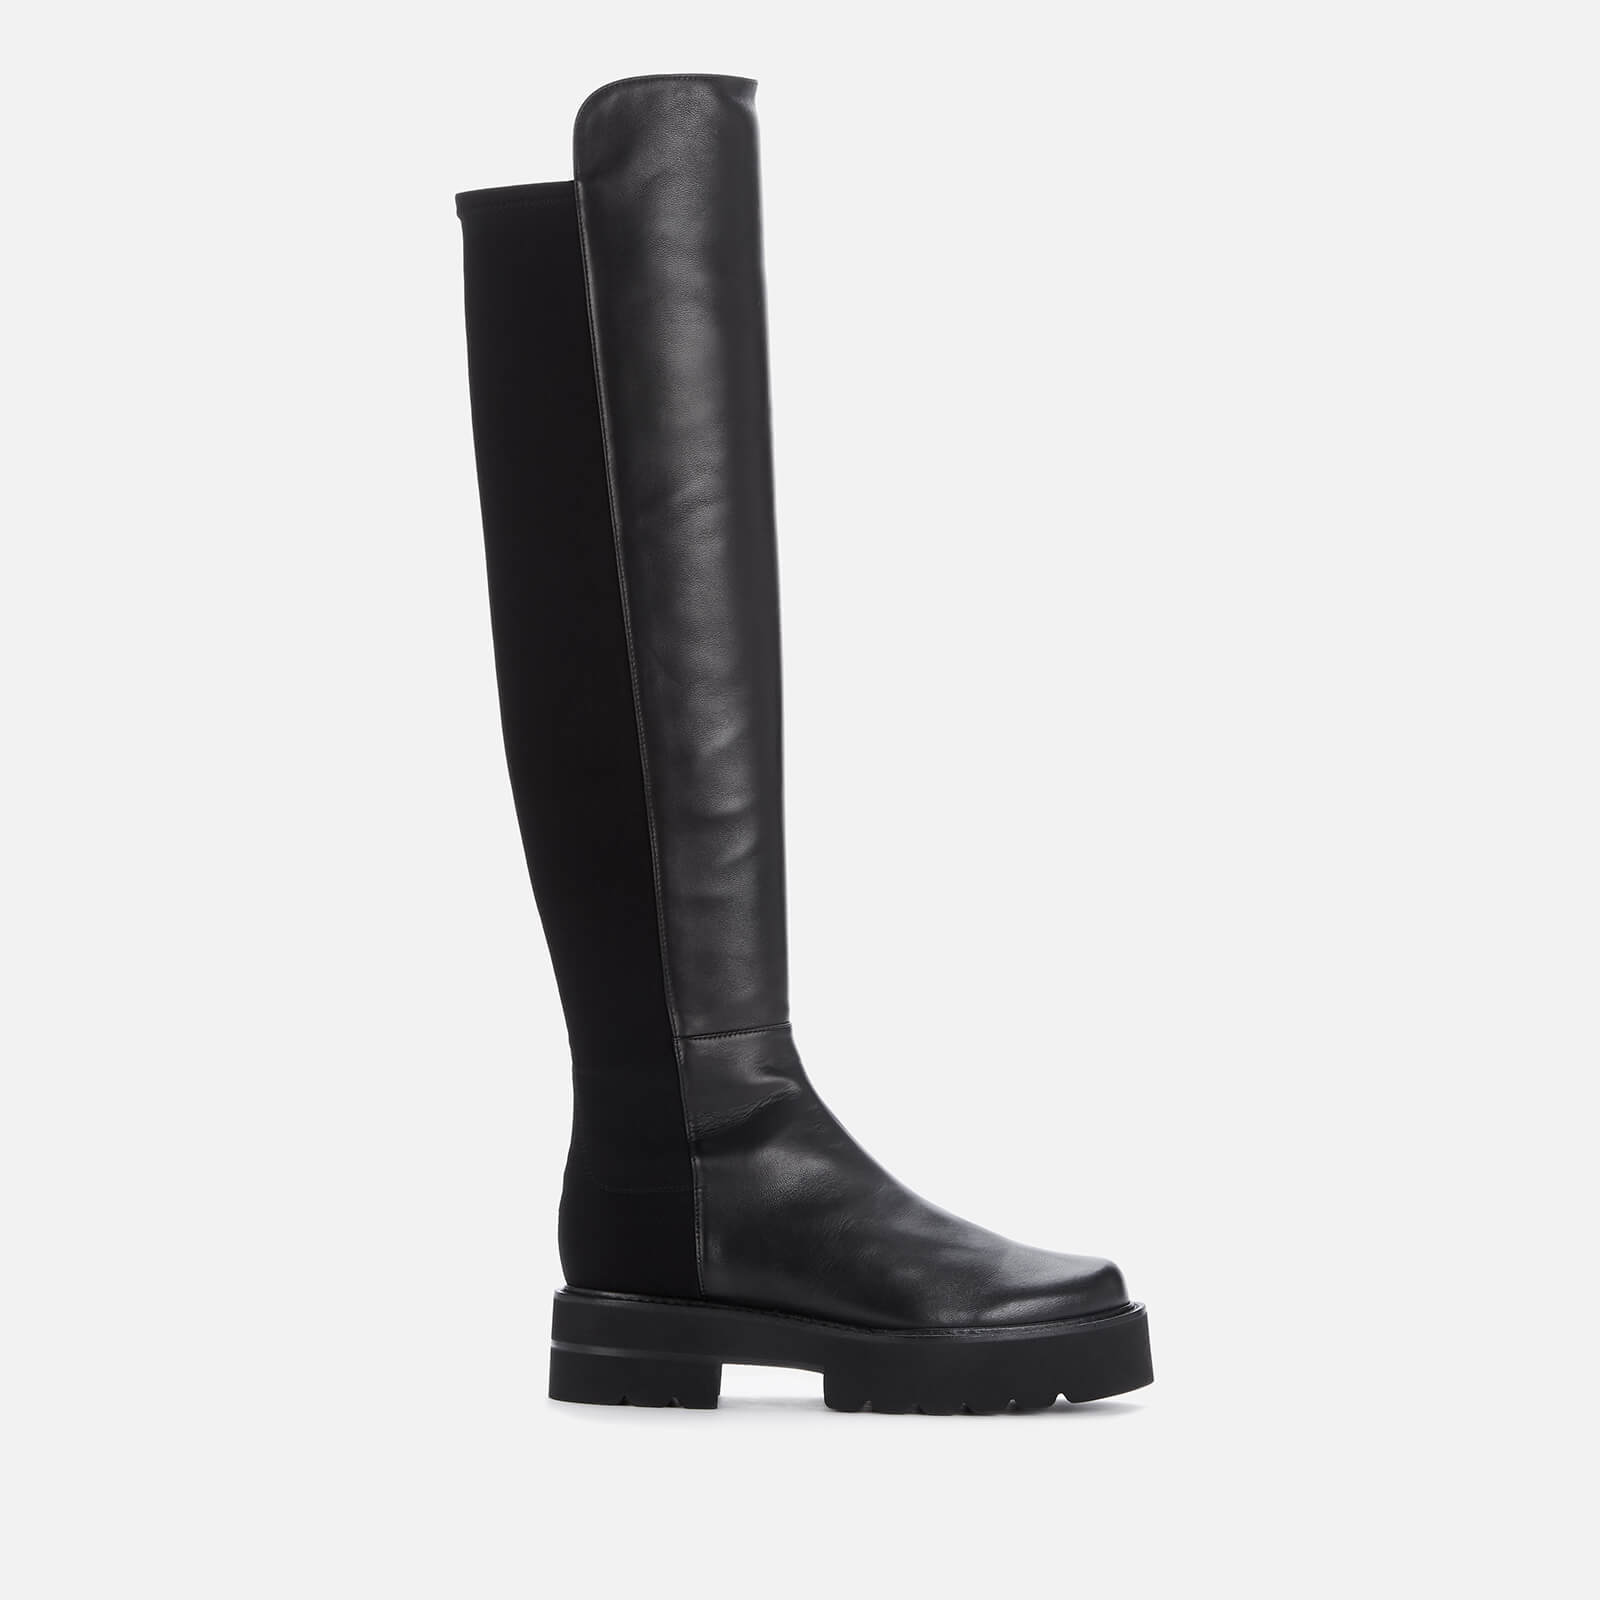 Stuart Weitzman Women's 5050 Suede/Leather Ultralift Knee High Boots - Black - UK 4